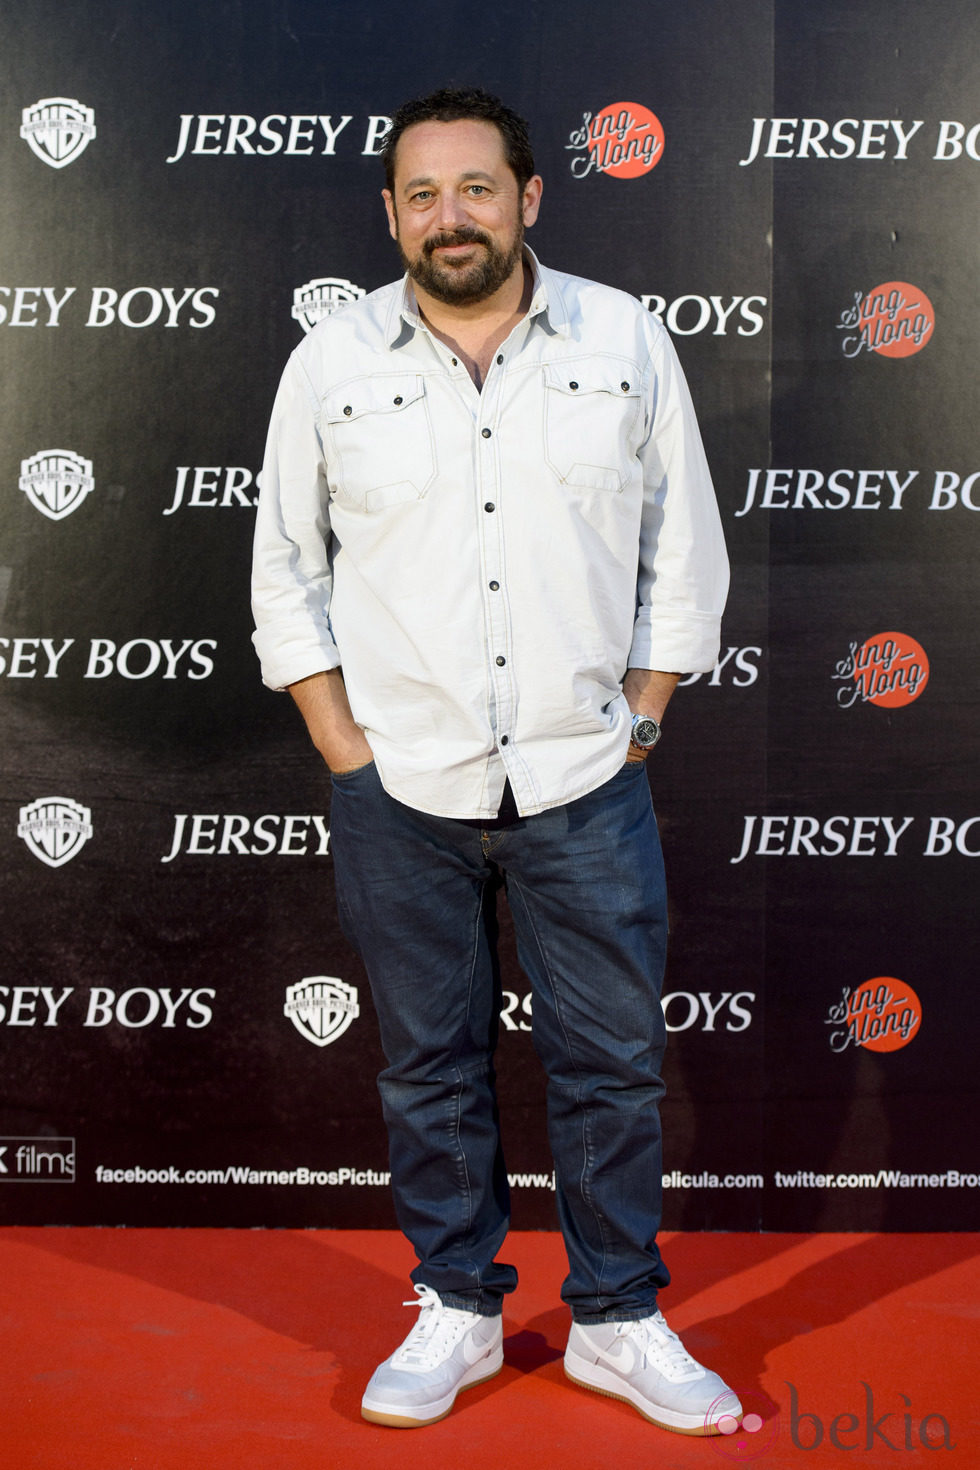 Pepón Nieto en el estreno de la película 'Jersey Boys' en Madrid